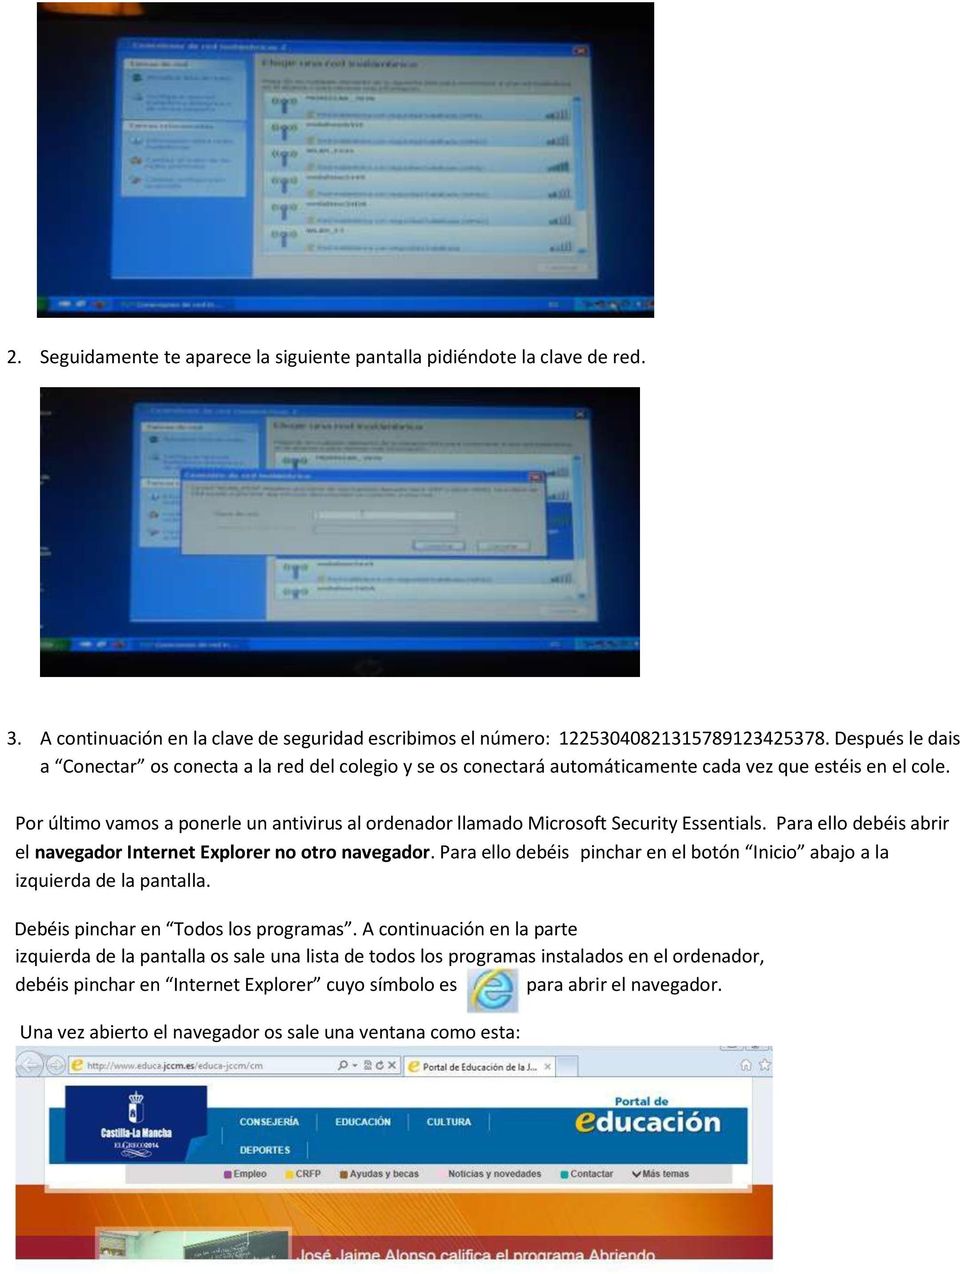 Por último vamos a ponerle un antivirus al ordenador llamado Microsoft Security Essentials. Para ello debéis abrir el navegador Internet Explorer no otro navegador.